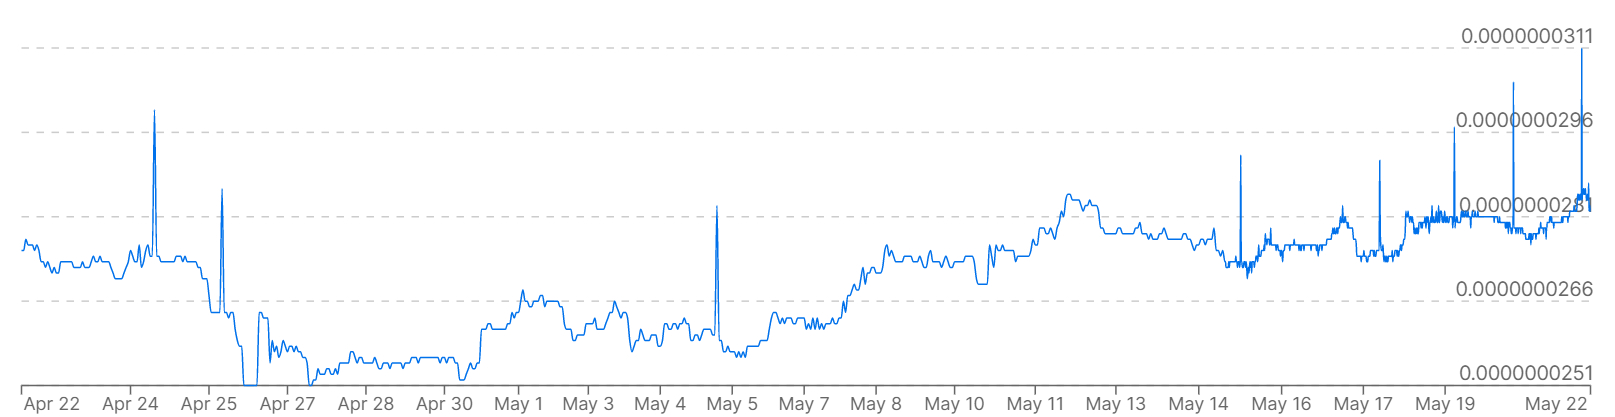 Geçen ay Güney Kore Wonu karşısında Bitcoin fiyatlarını gösteren bir grafik.